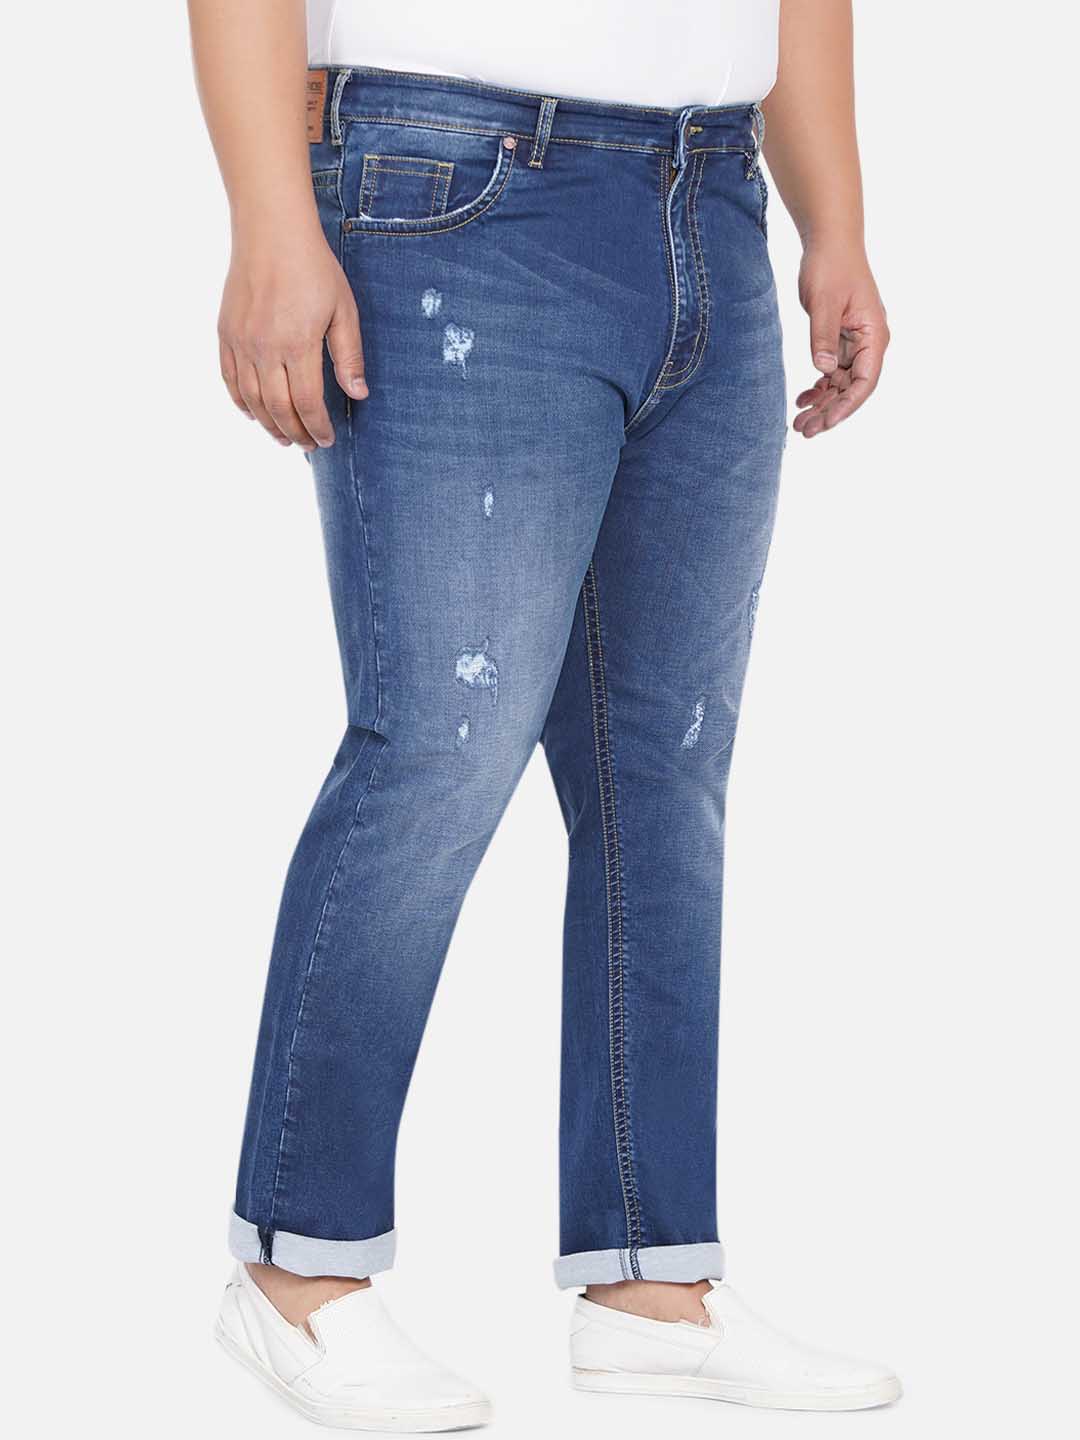 bottomwear/jeans/JPJ12237/jpj12237-3.jpg